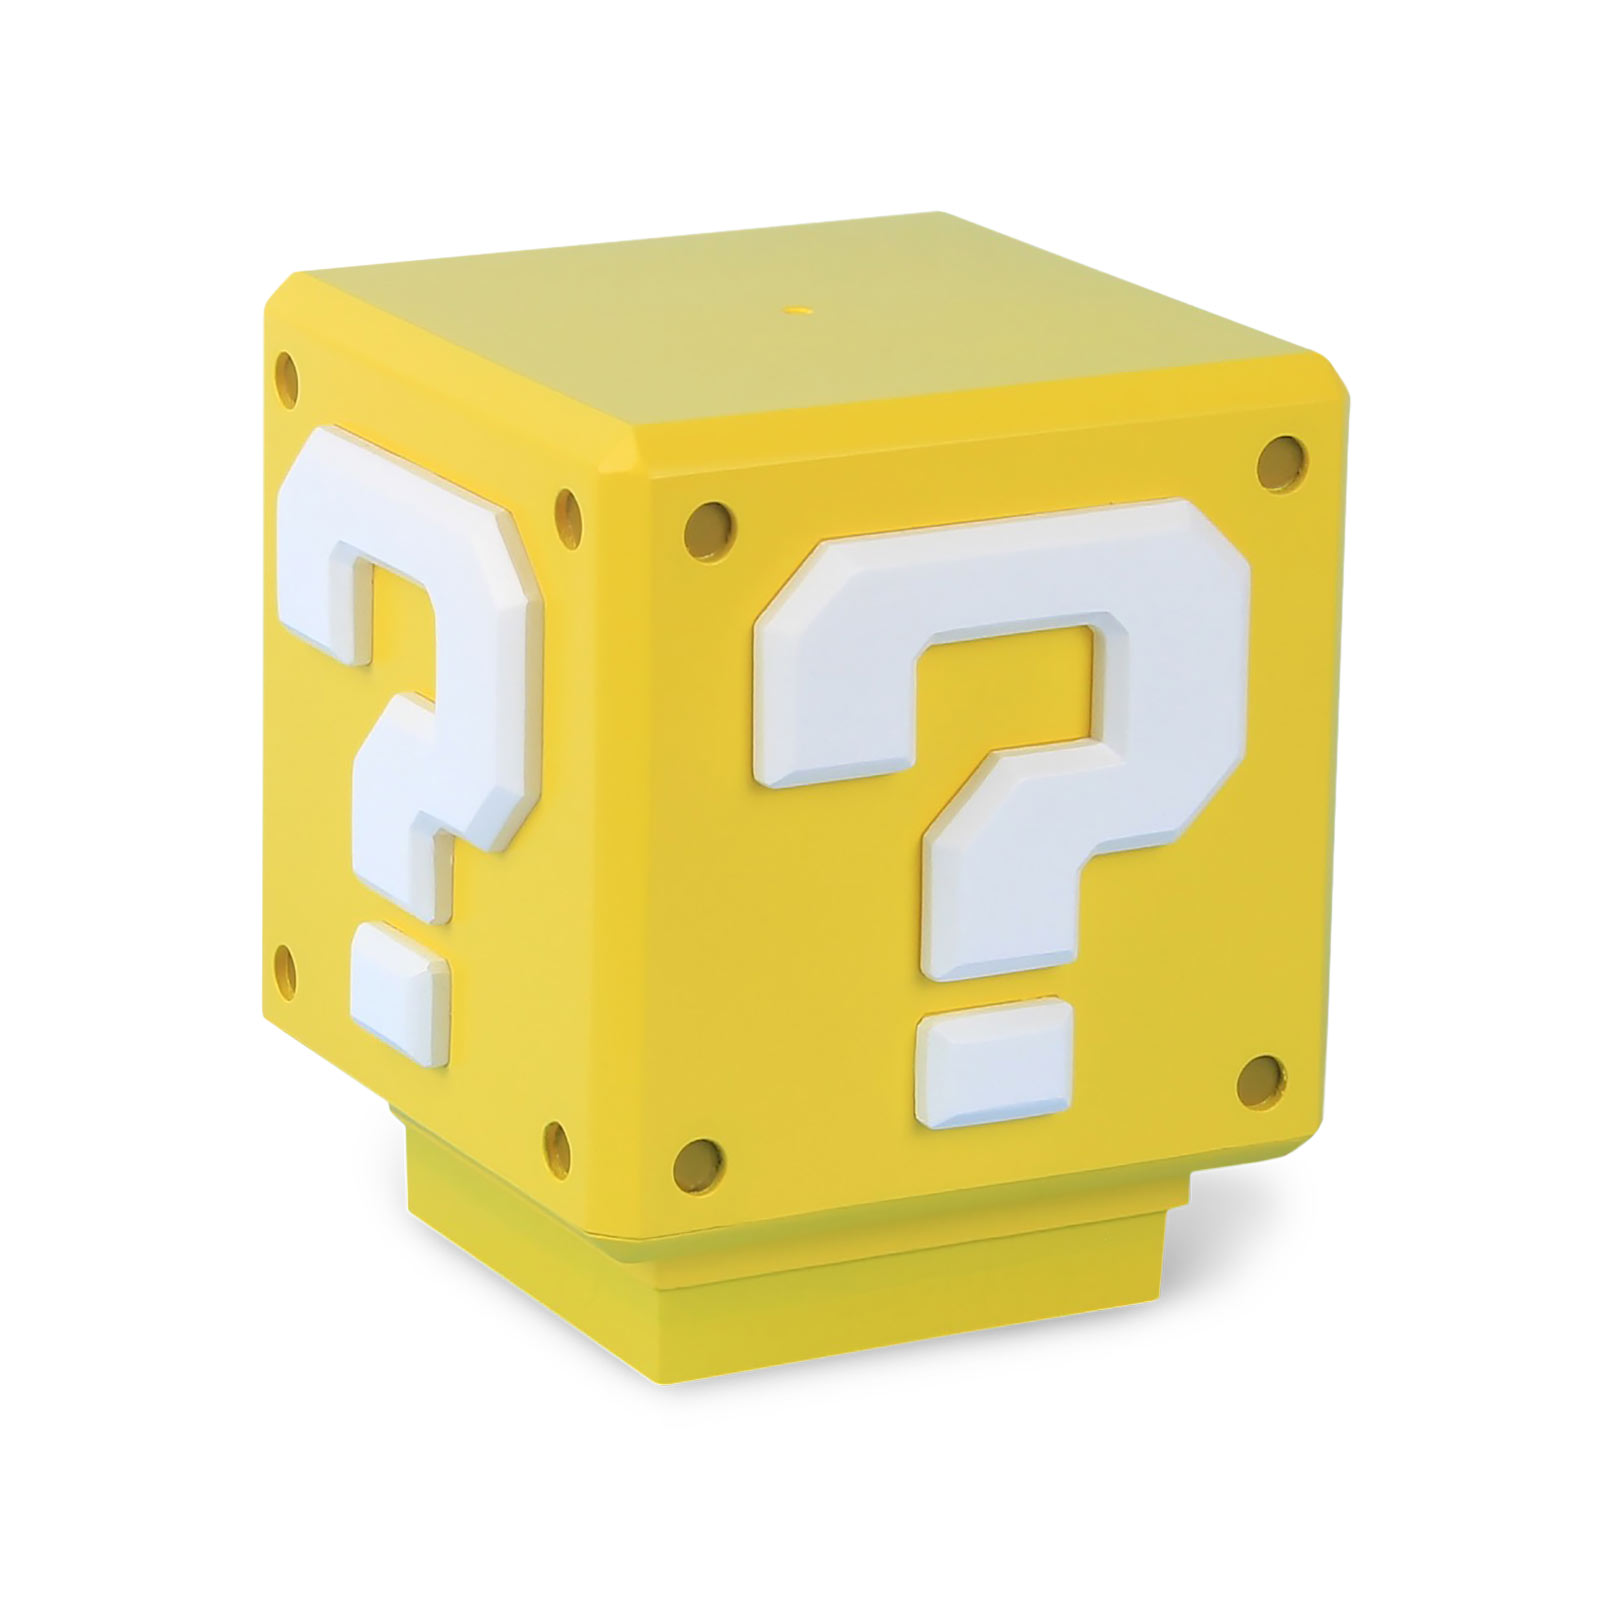 Super Mario - Mini Question Mark Lamp with Sound